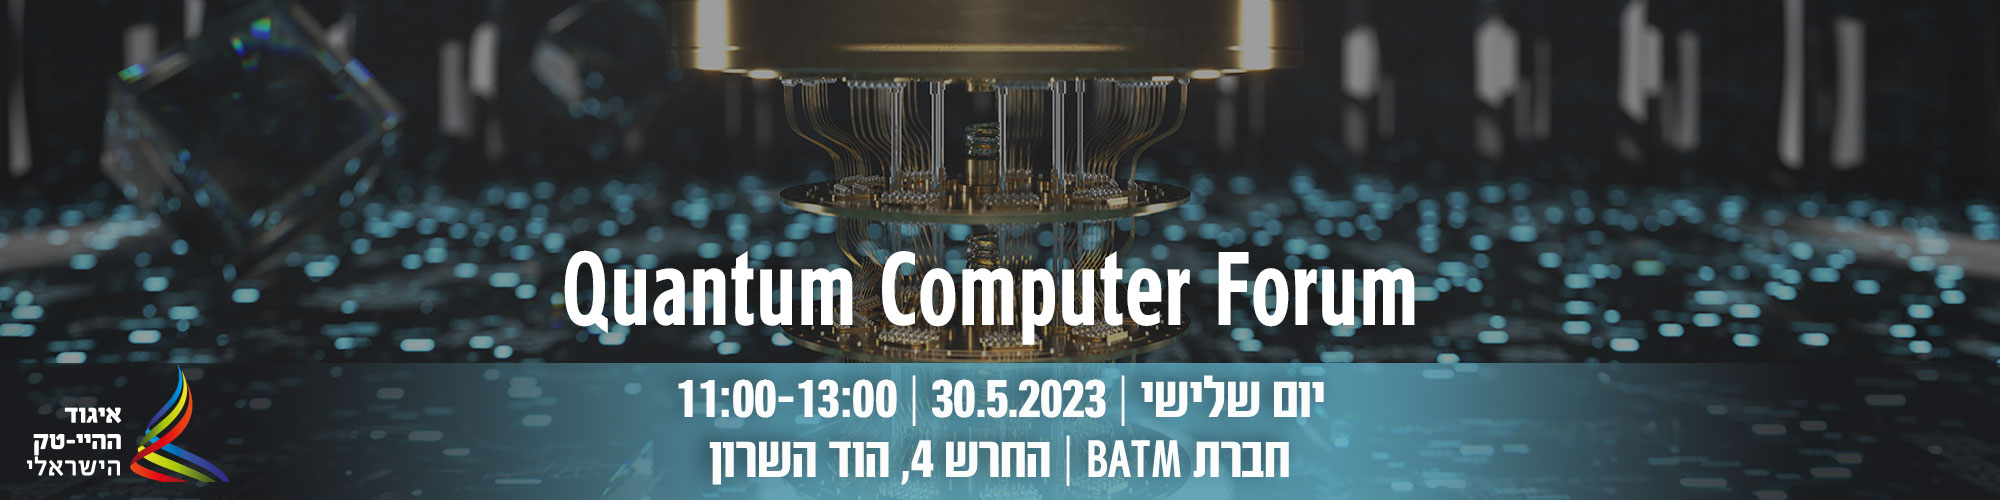 Quantum computer forum